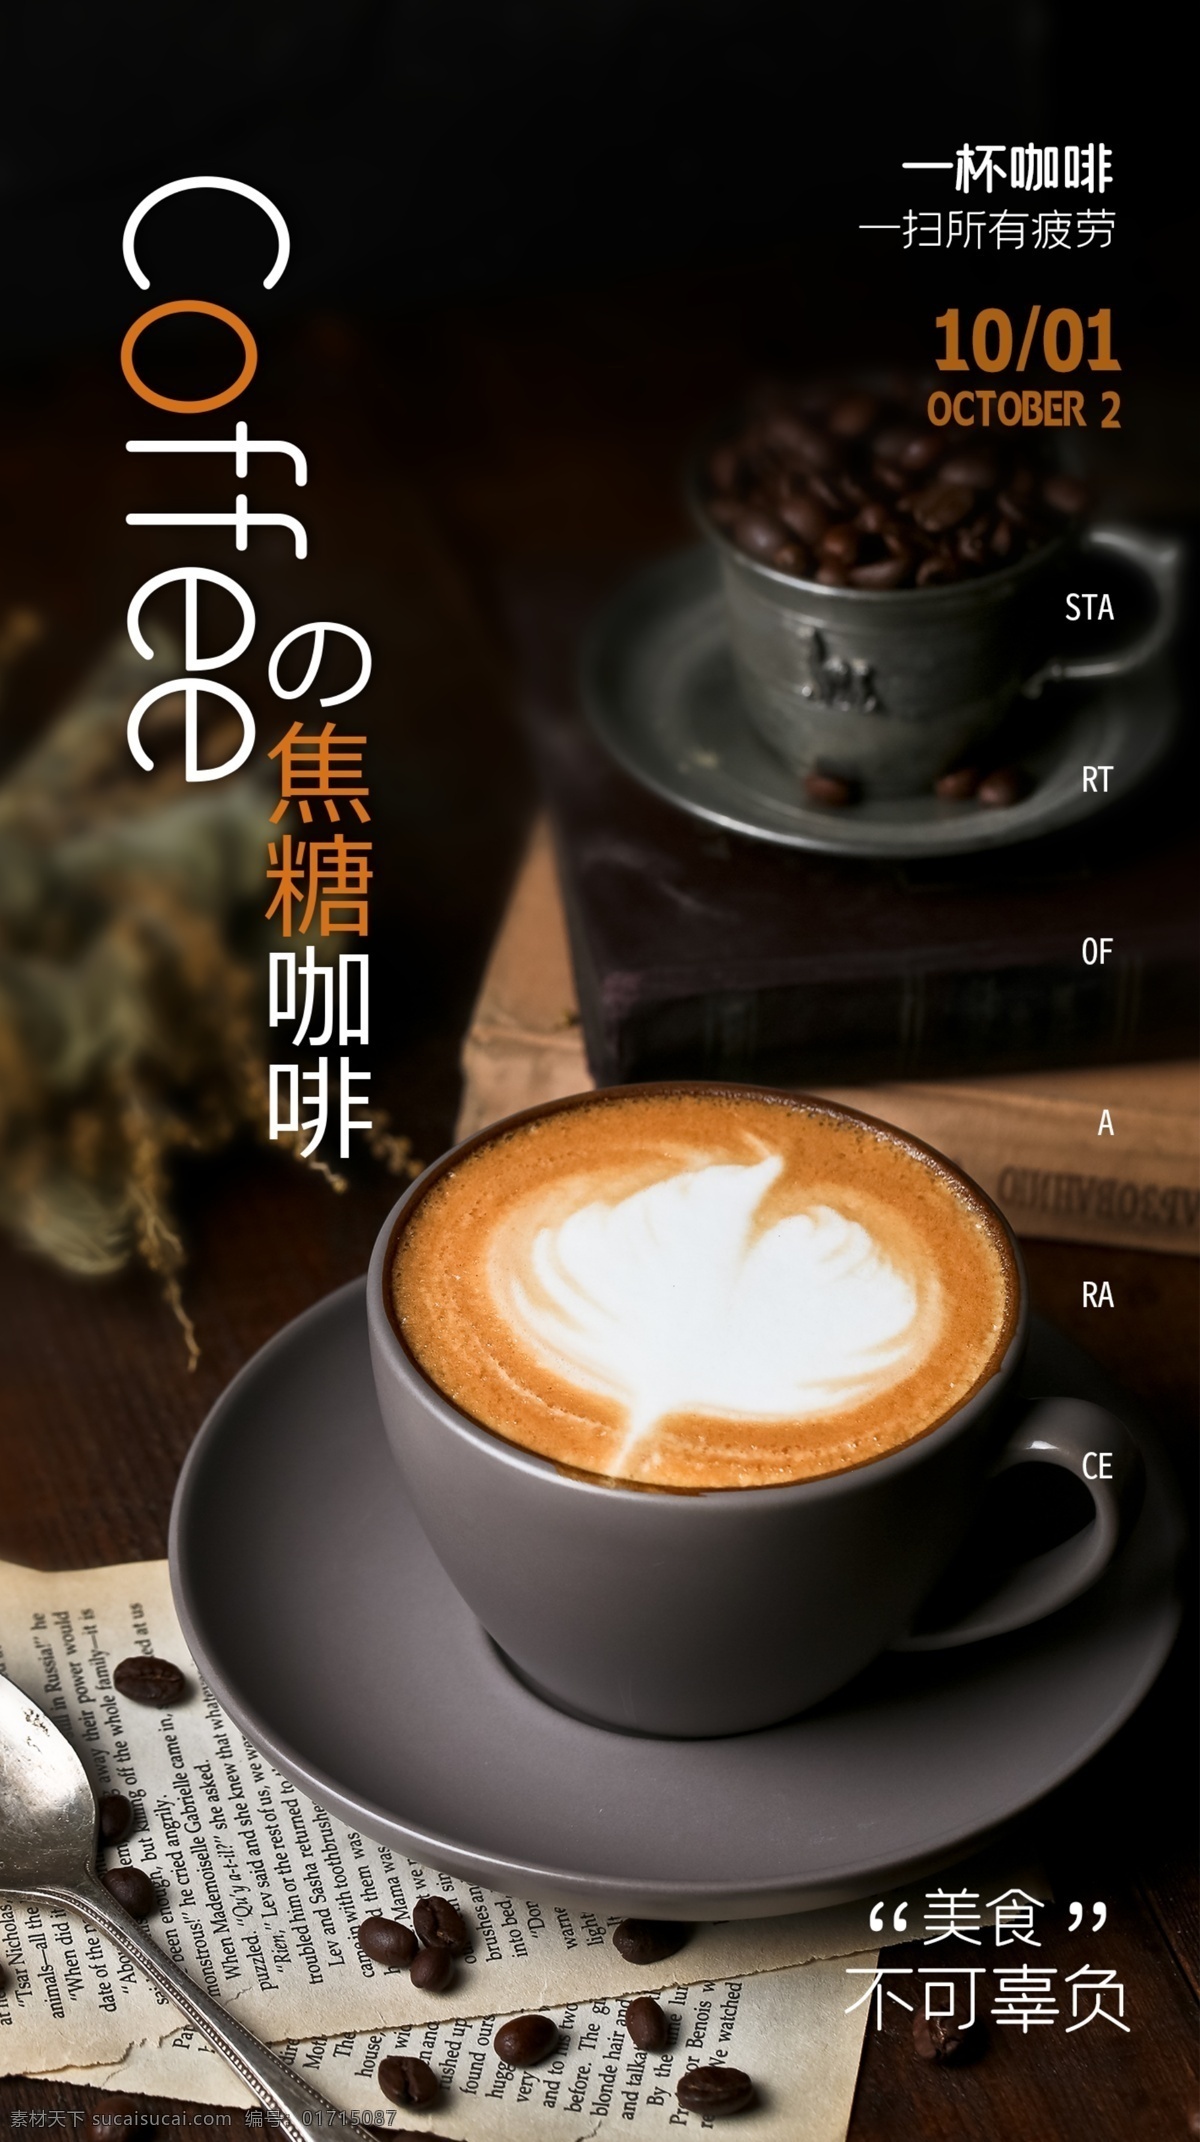 咖啡 饮品 饮料 活动 海报 素材图片 甜品 类